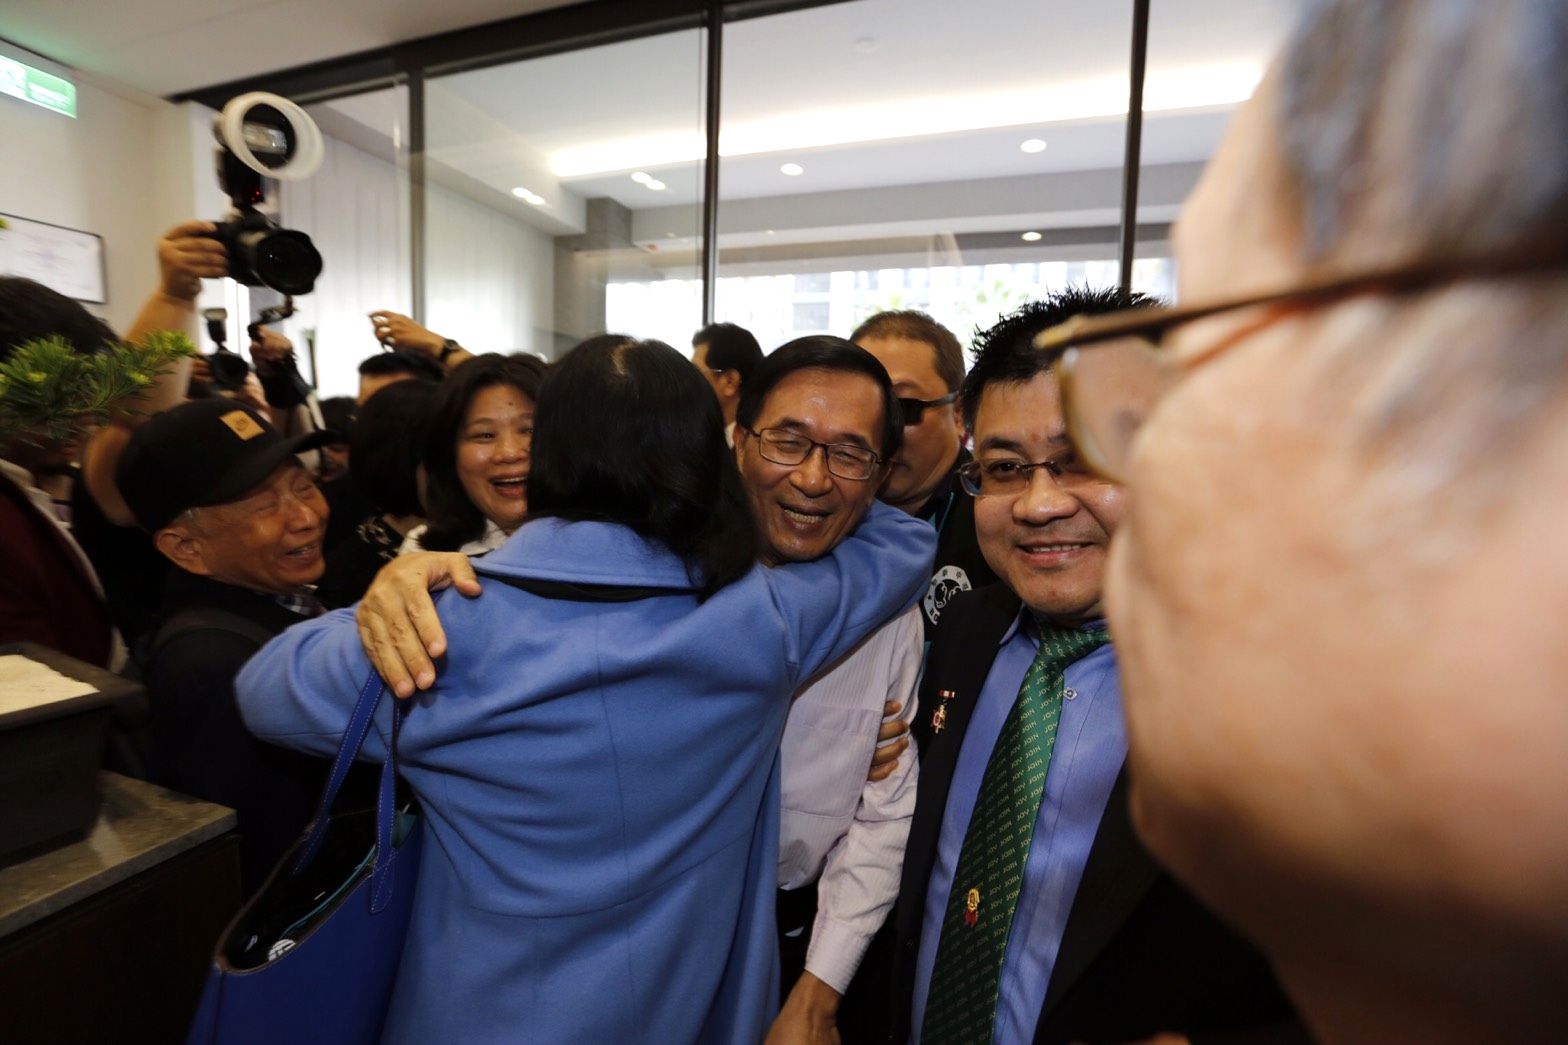 熱情支持者一見阿扁到場，直接飛撲過去給了一個滿滿的大擁抱。